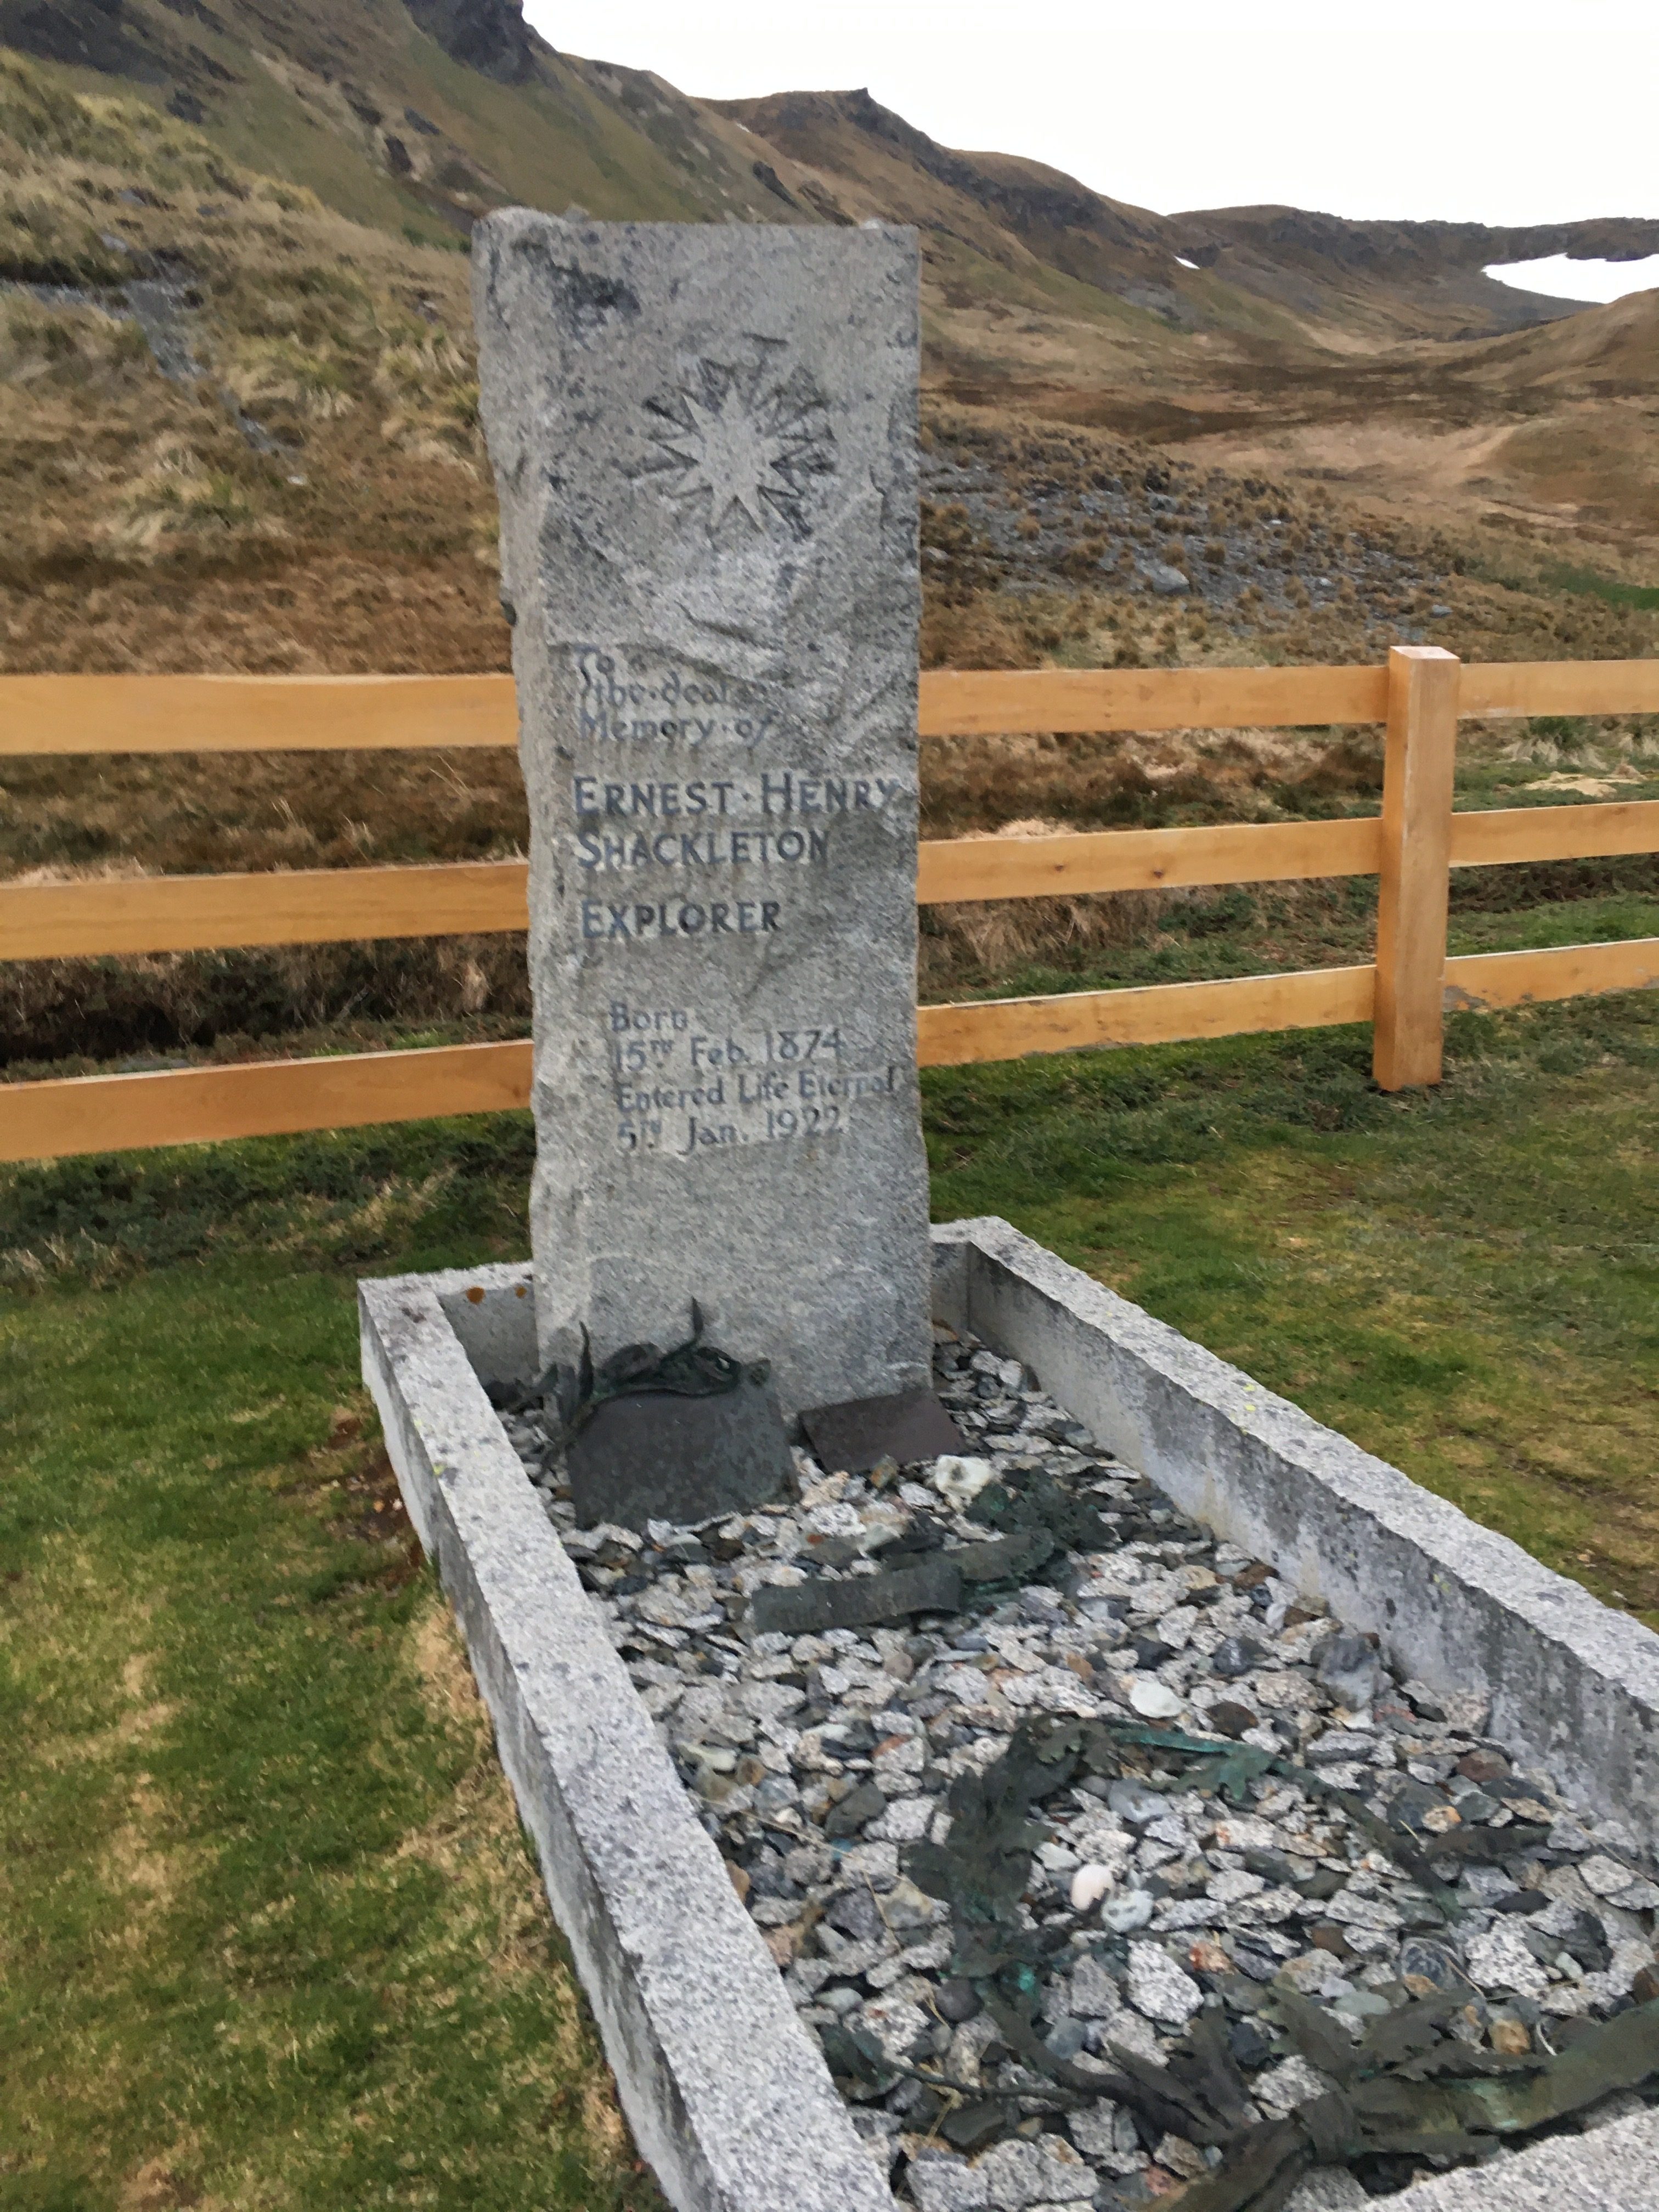 Ernest Shackleton's grave. Image: Toni Younghusband